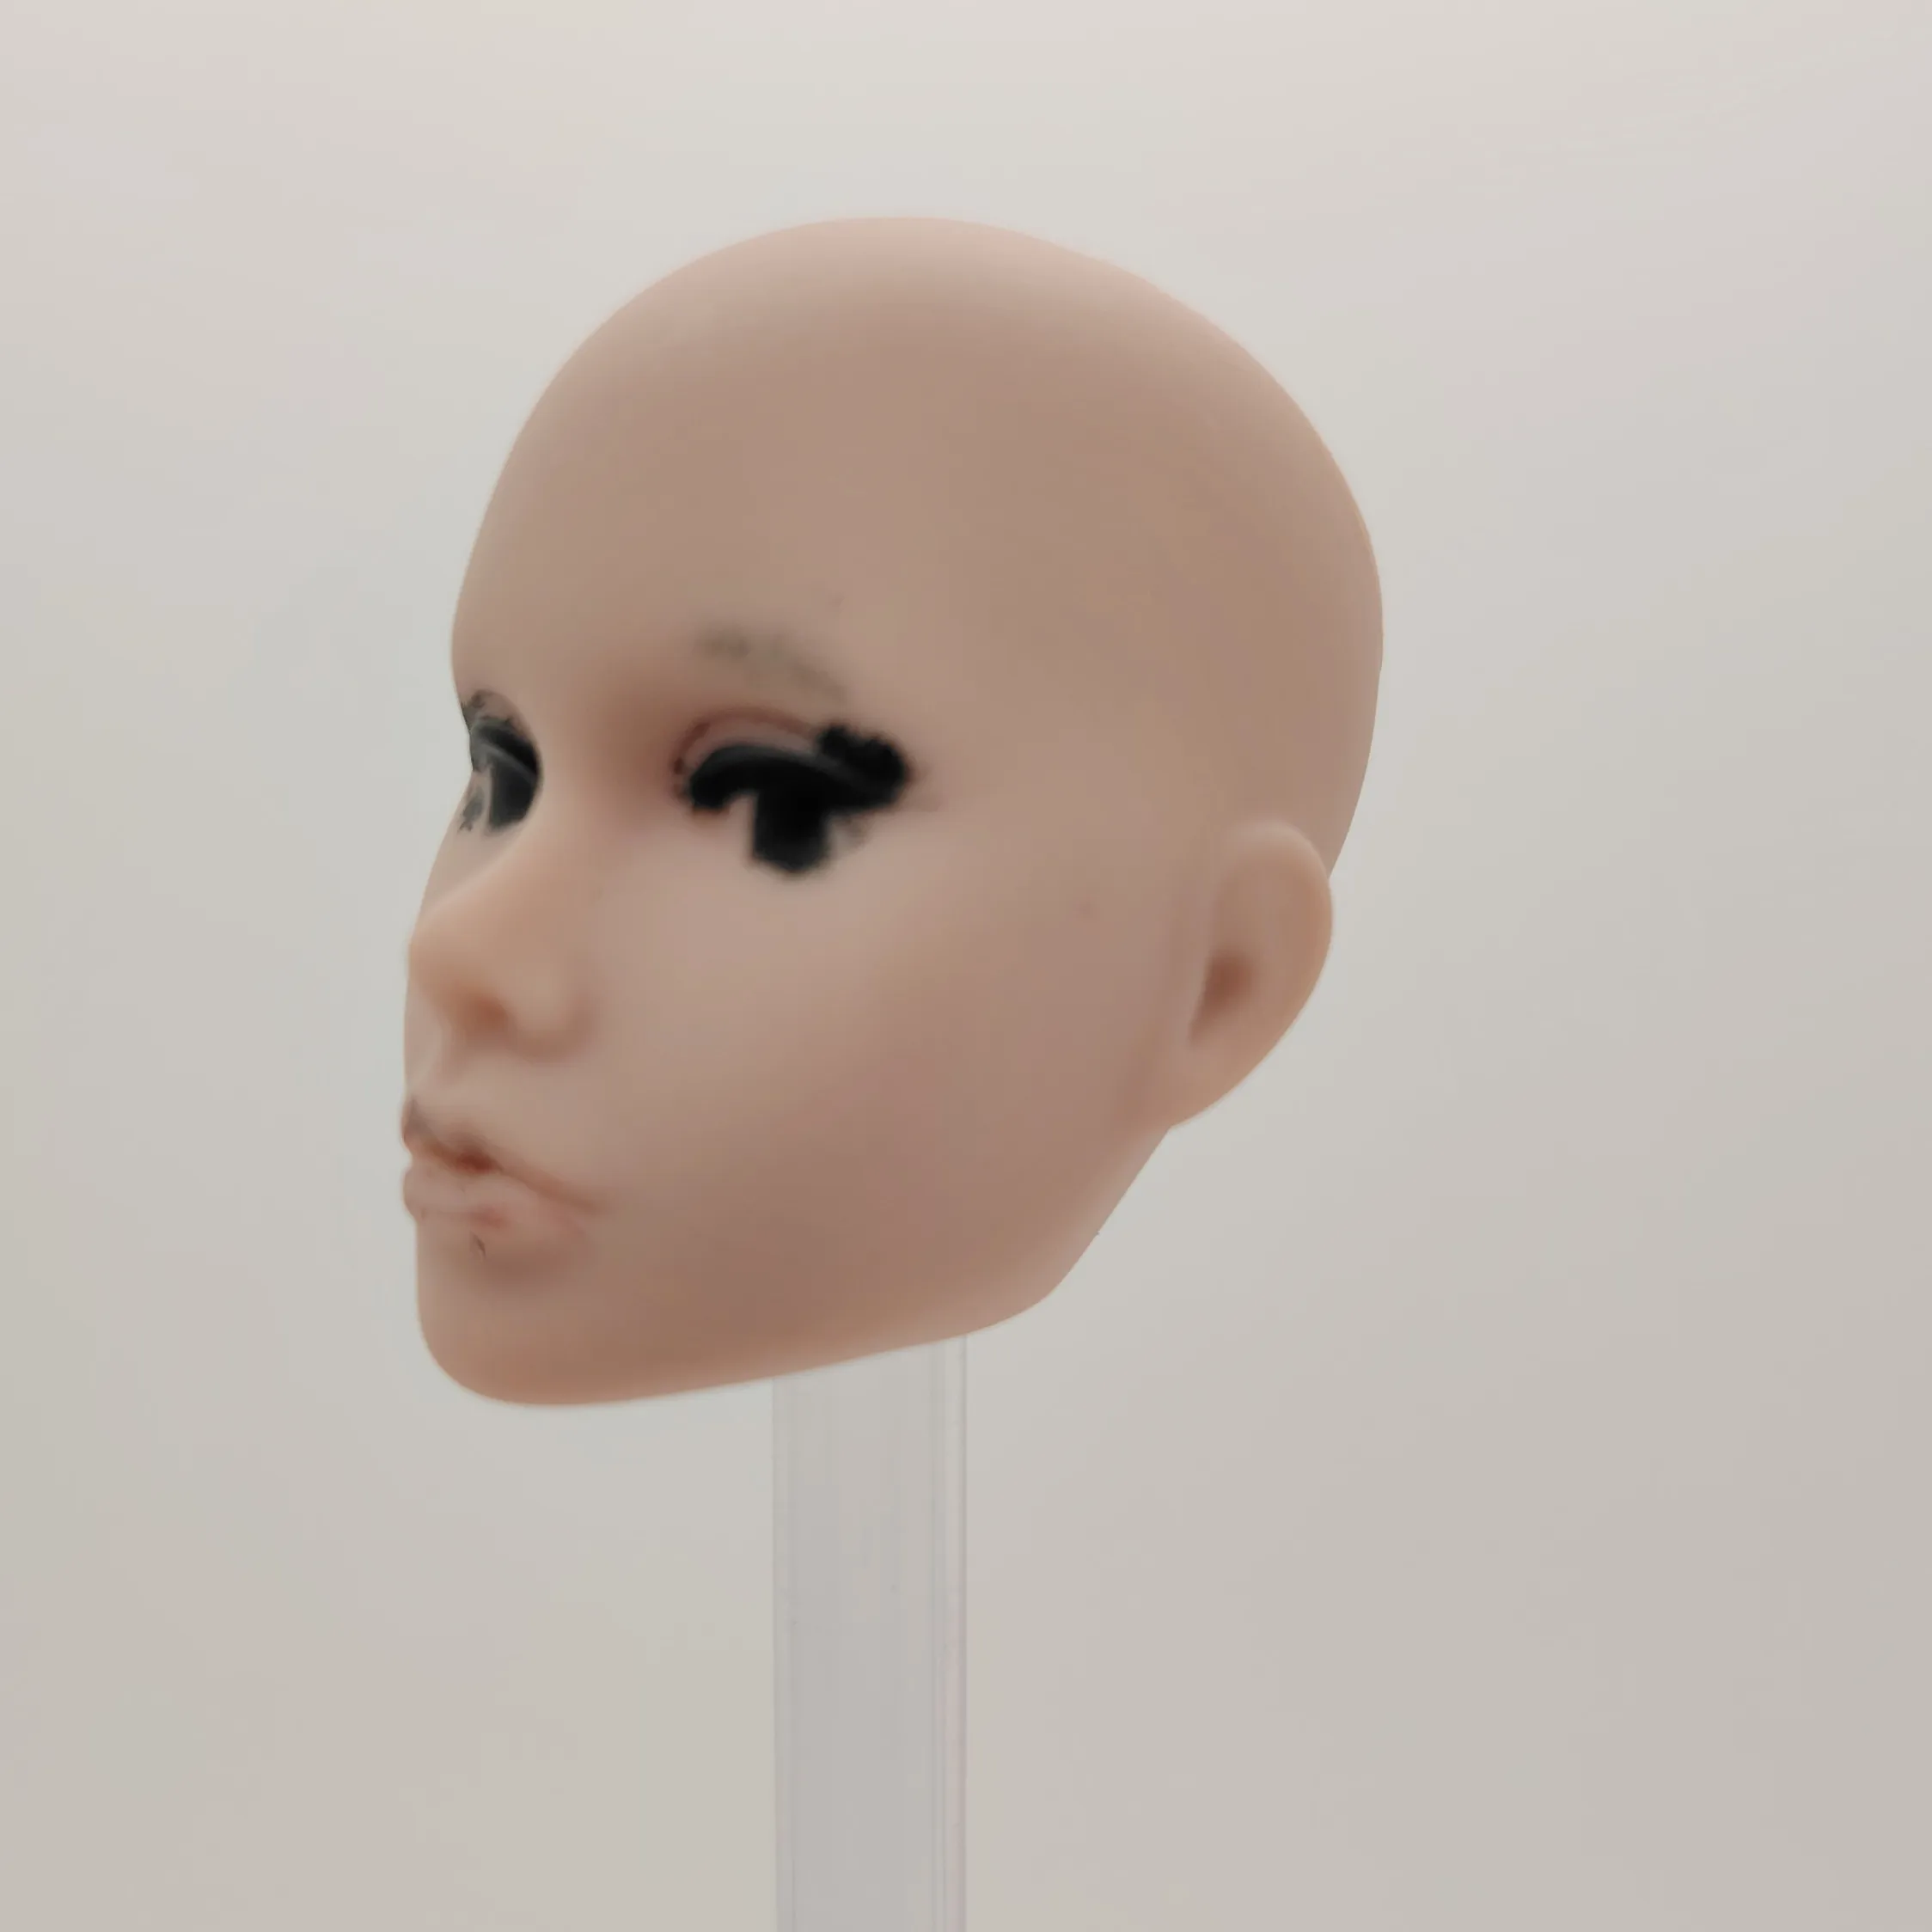 Fashion Royalty Poppy Parker Без Волос 1/6 Масштаб Неокрашенная Пластиковая Кукольная Голова Изображение 4